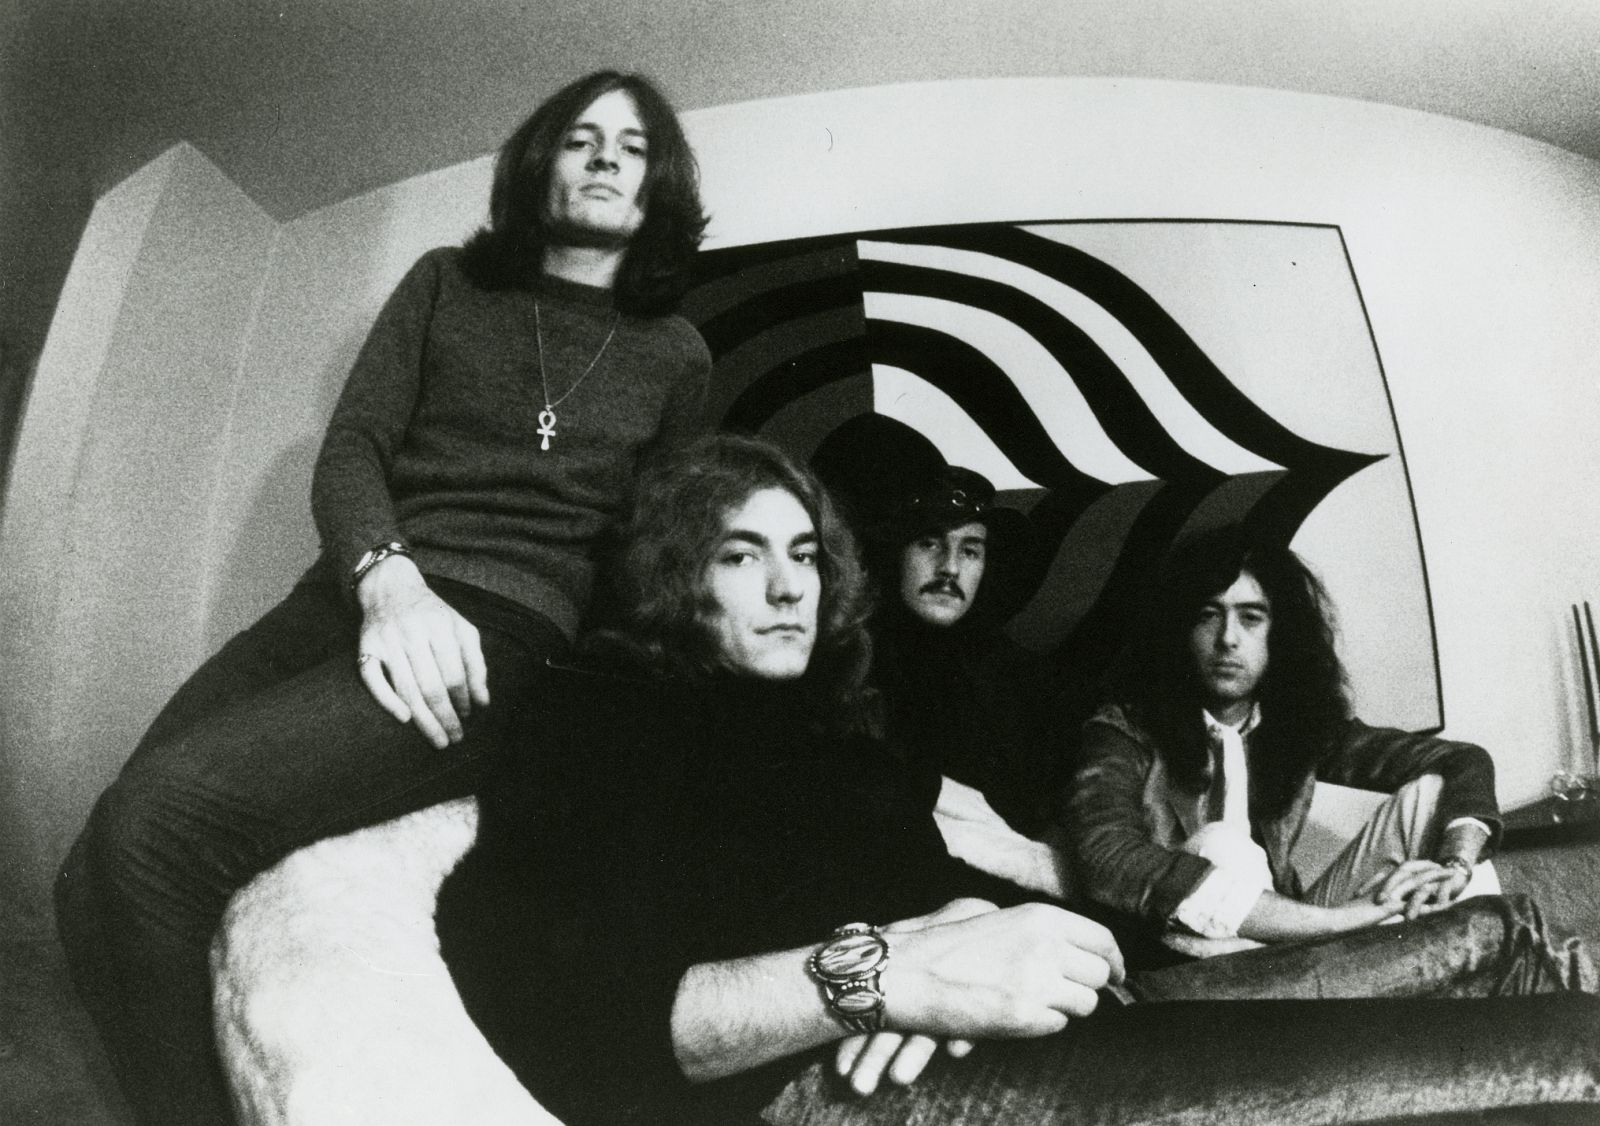 La imágen de misterio y ocultismo acopañó siempre a Led Zeppelin